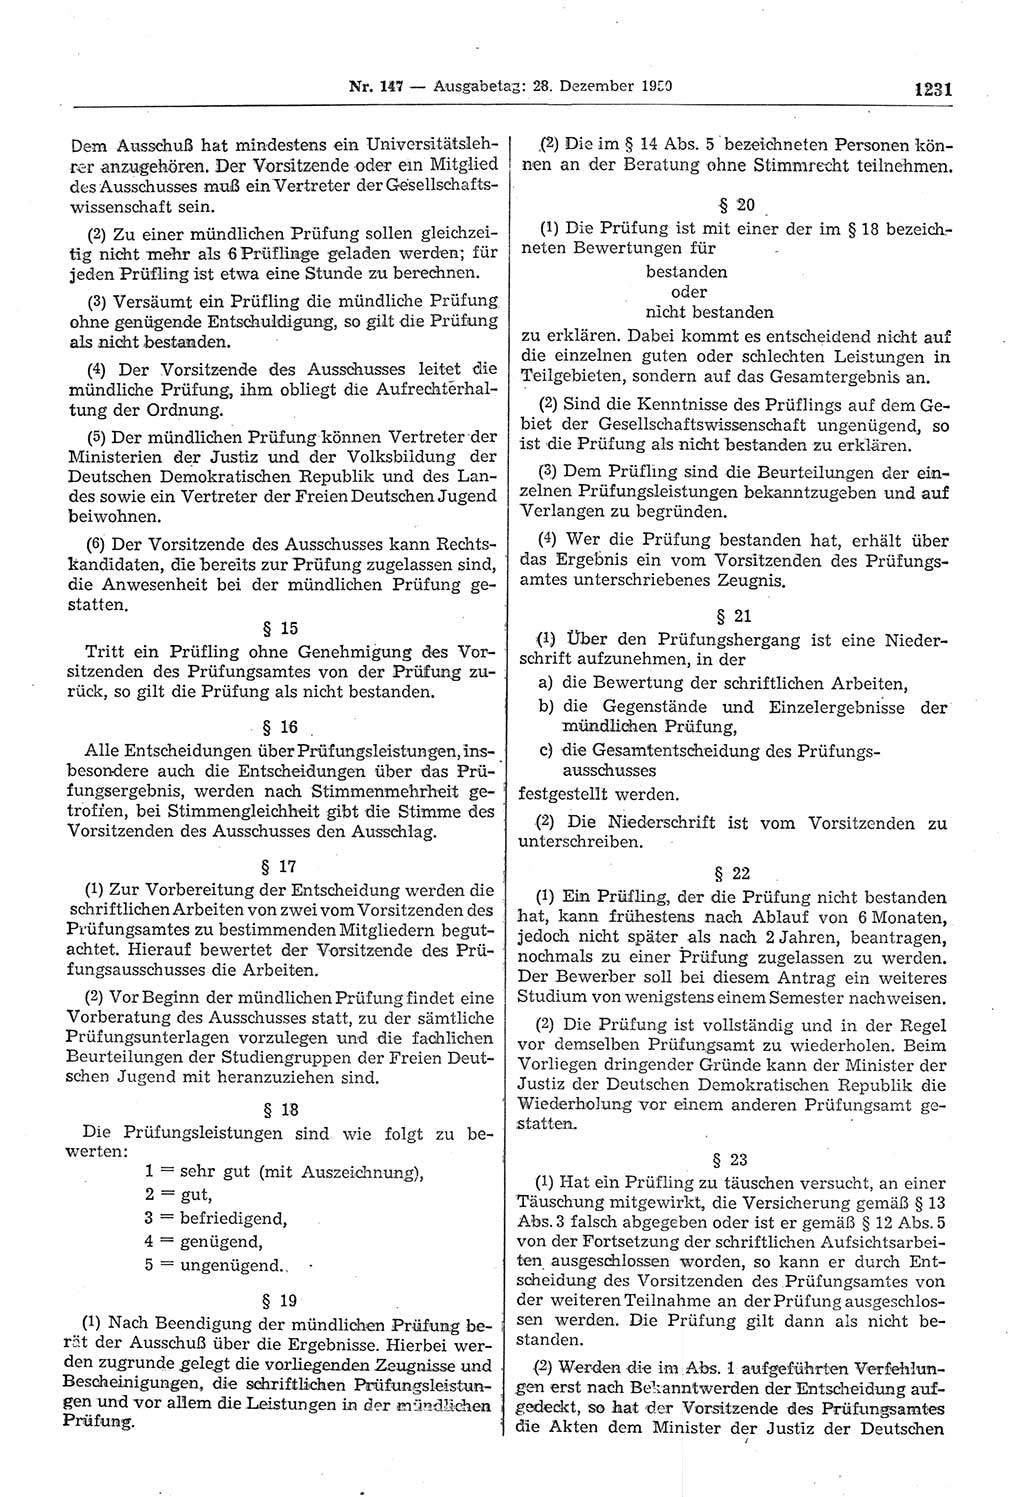 Gesetzblatt (GBl.) der Deutschen Demokratischen Republik (DDR) 1950, Seite 1231 (GBl. DDR 1950, S. 1231)